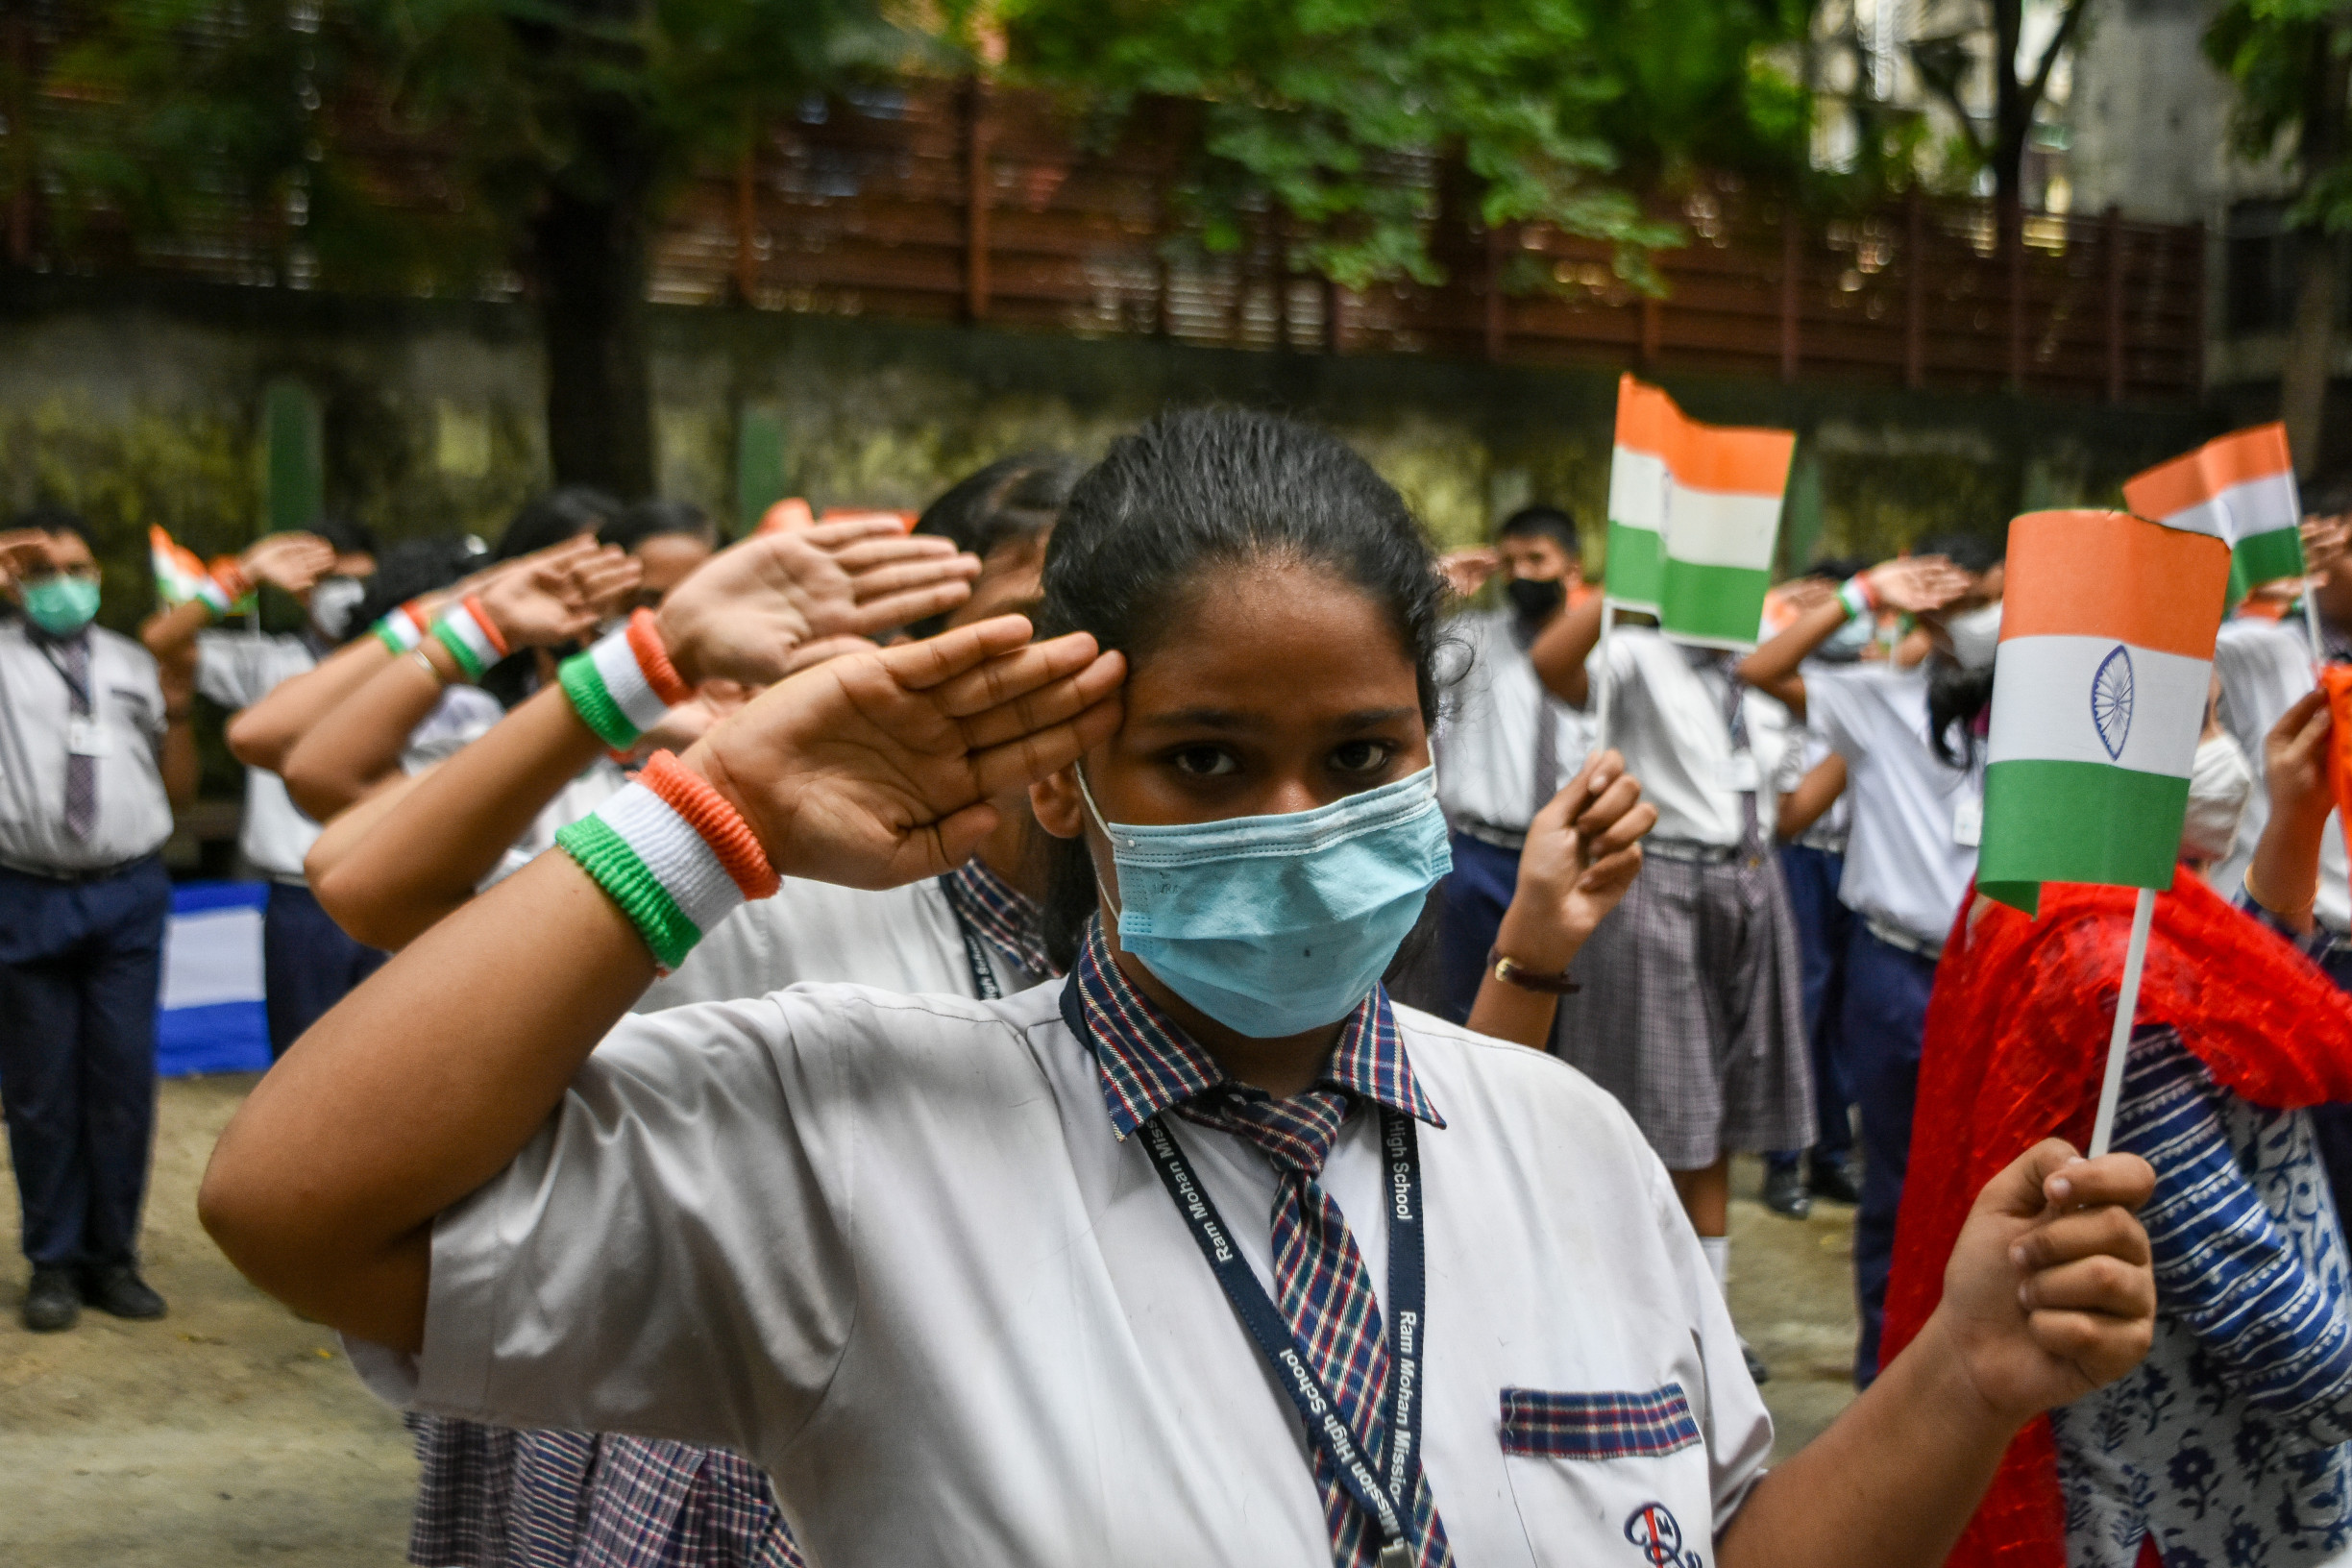 Indická vláda při 75. výročí nezávislosti zapomněla na Gándhího. Na rozdíl od něj nevyznává nenásilí